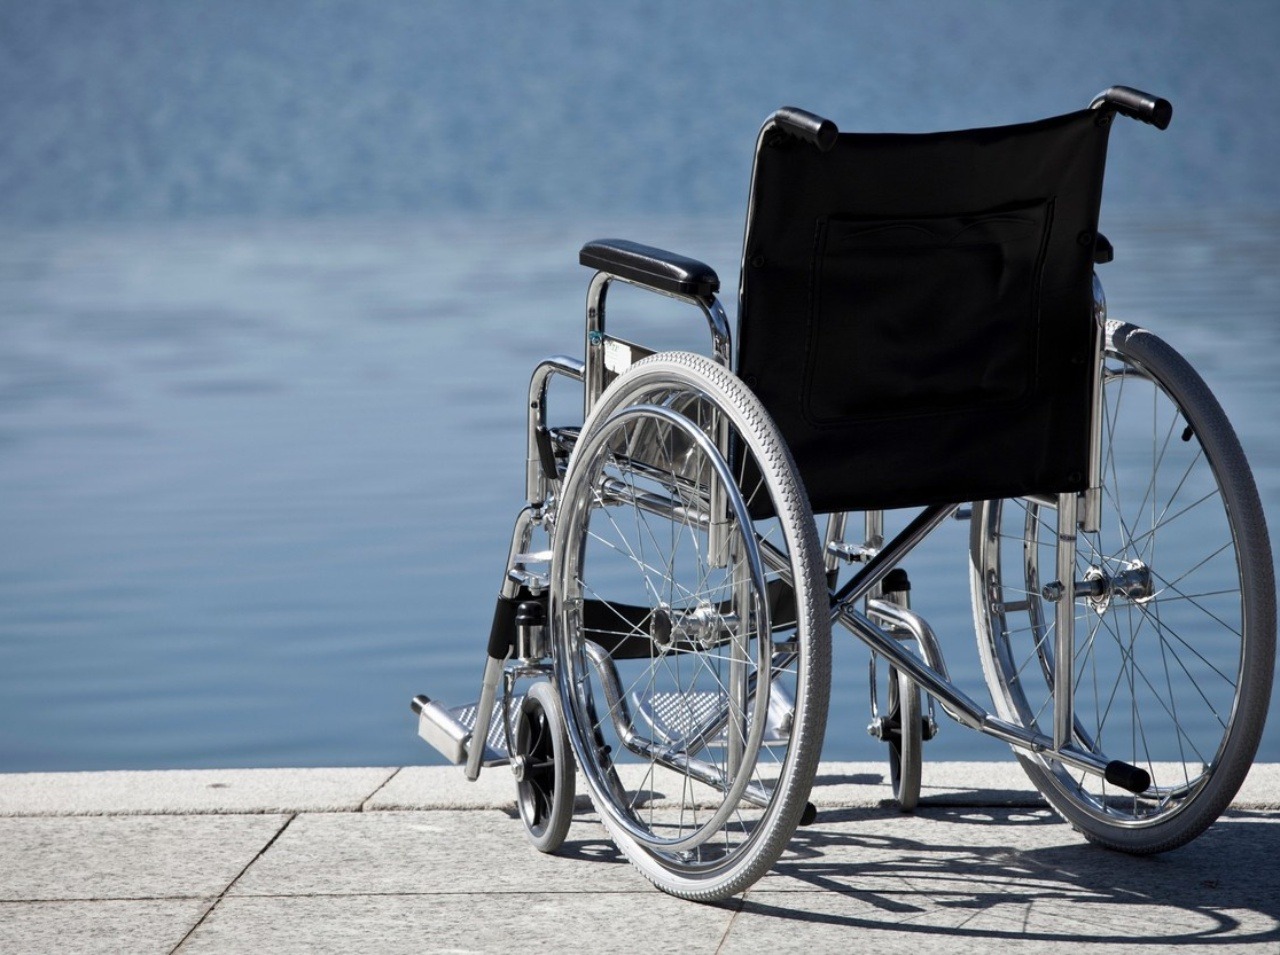 Stará žena už nepotrebovala invalidný vozík kvôli skolióze, ktorou trpela. 